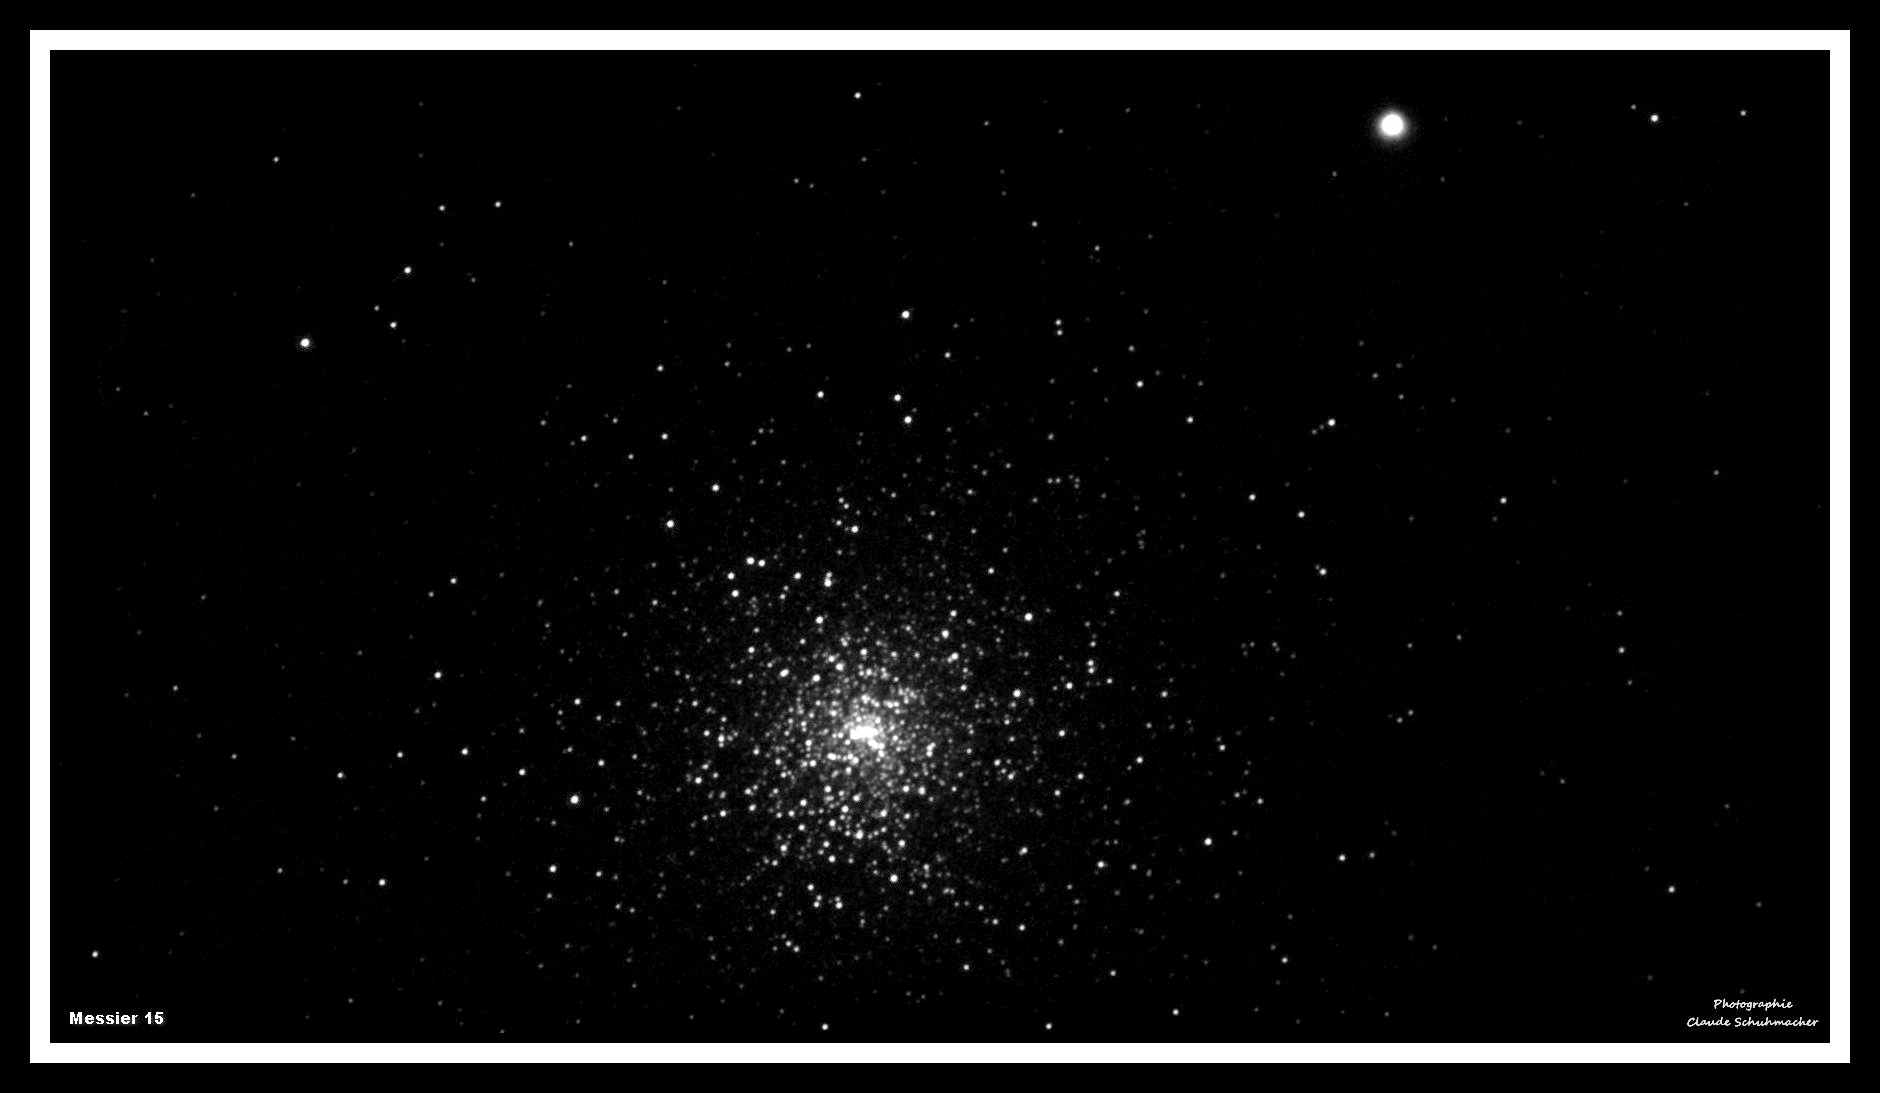 5f6887c235a81_Messier15bis.jpg.52d27961c6ed300f25a0b03cfe194ec2.jpg